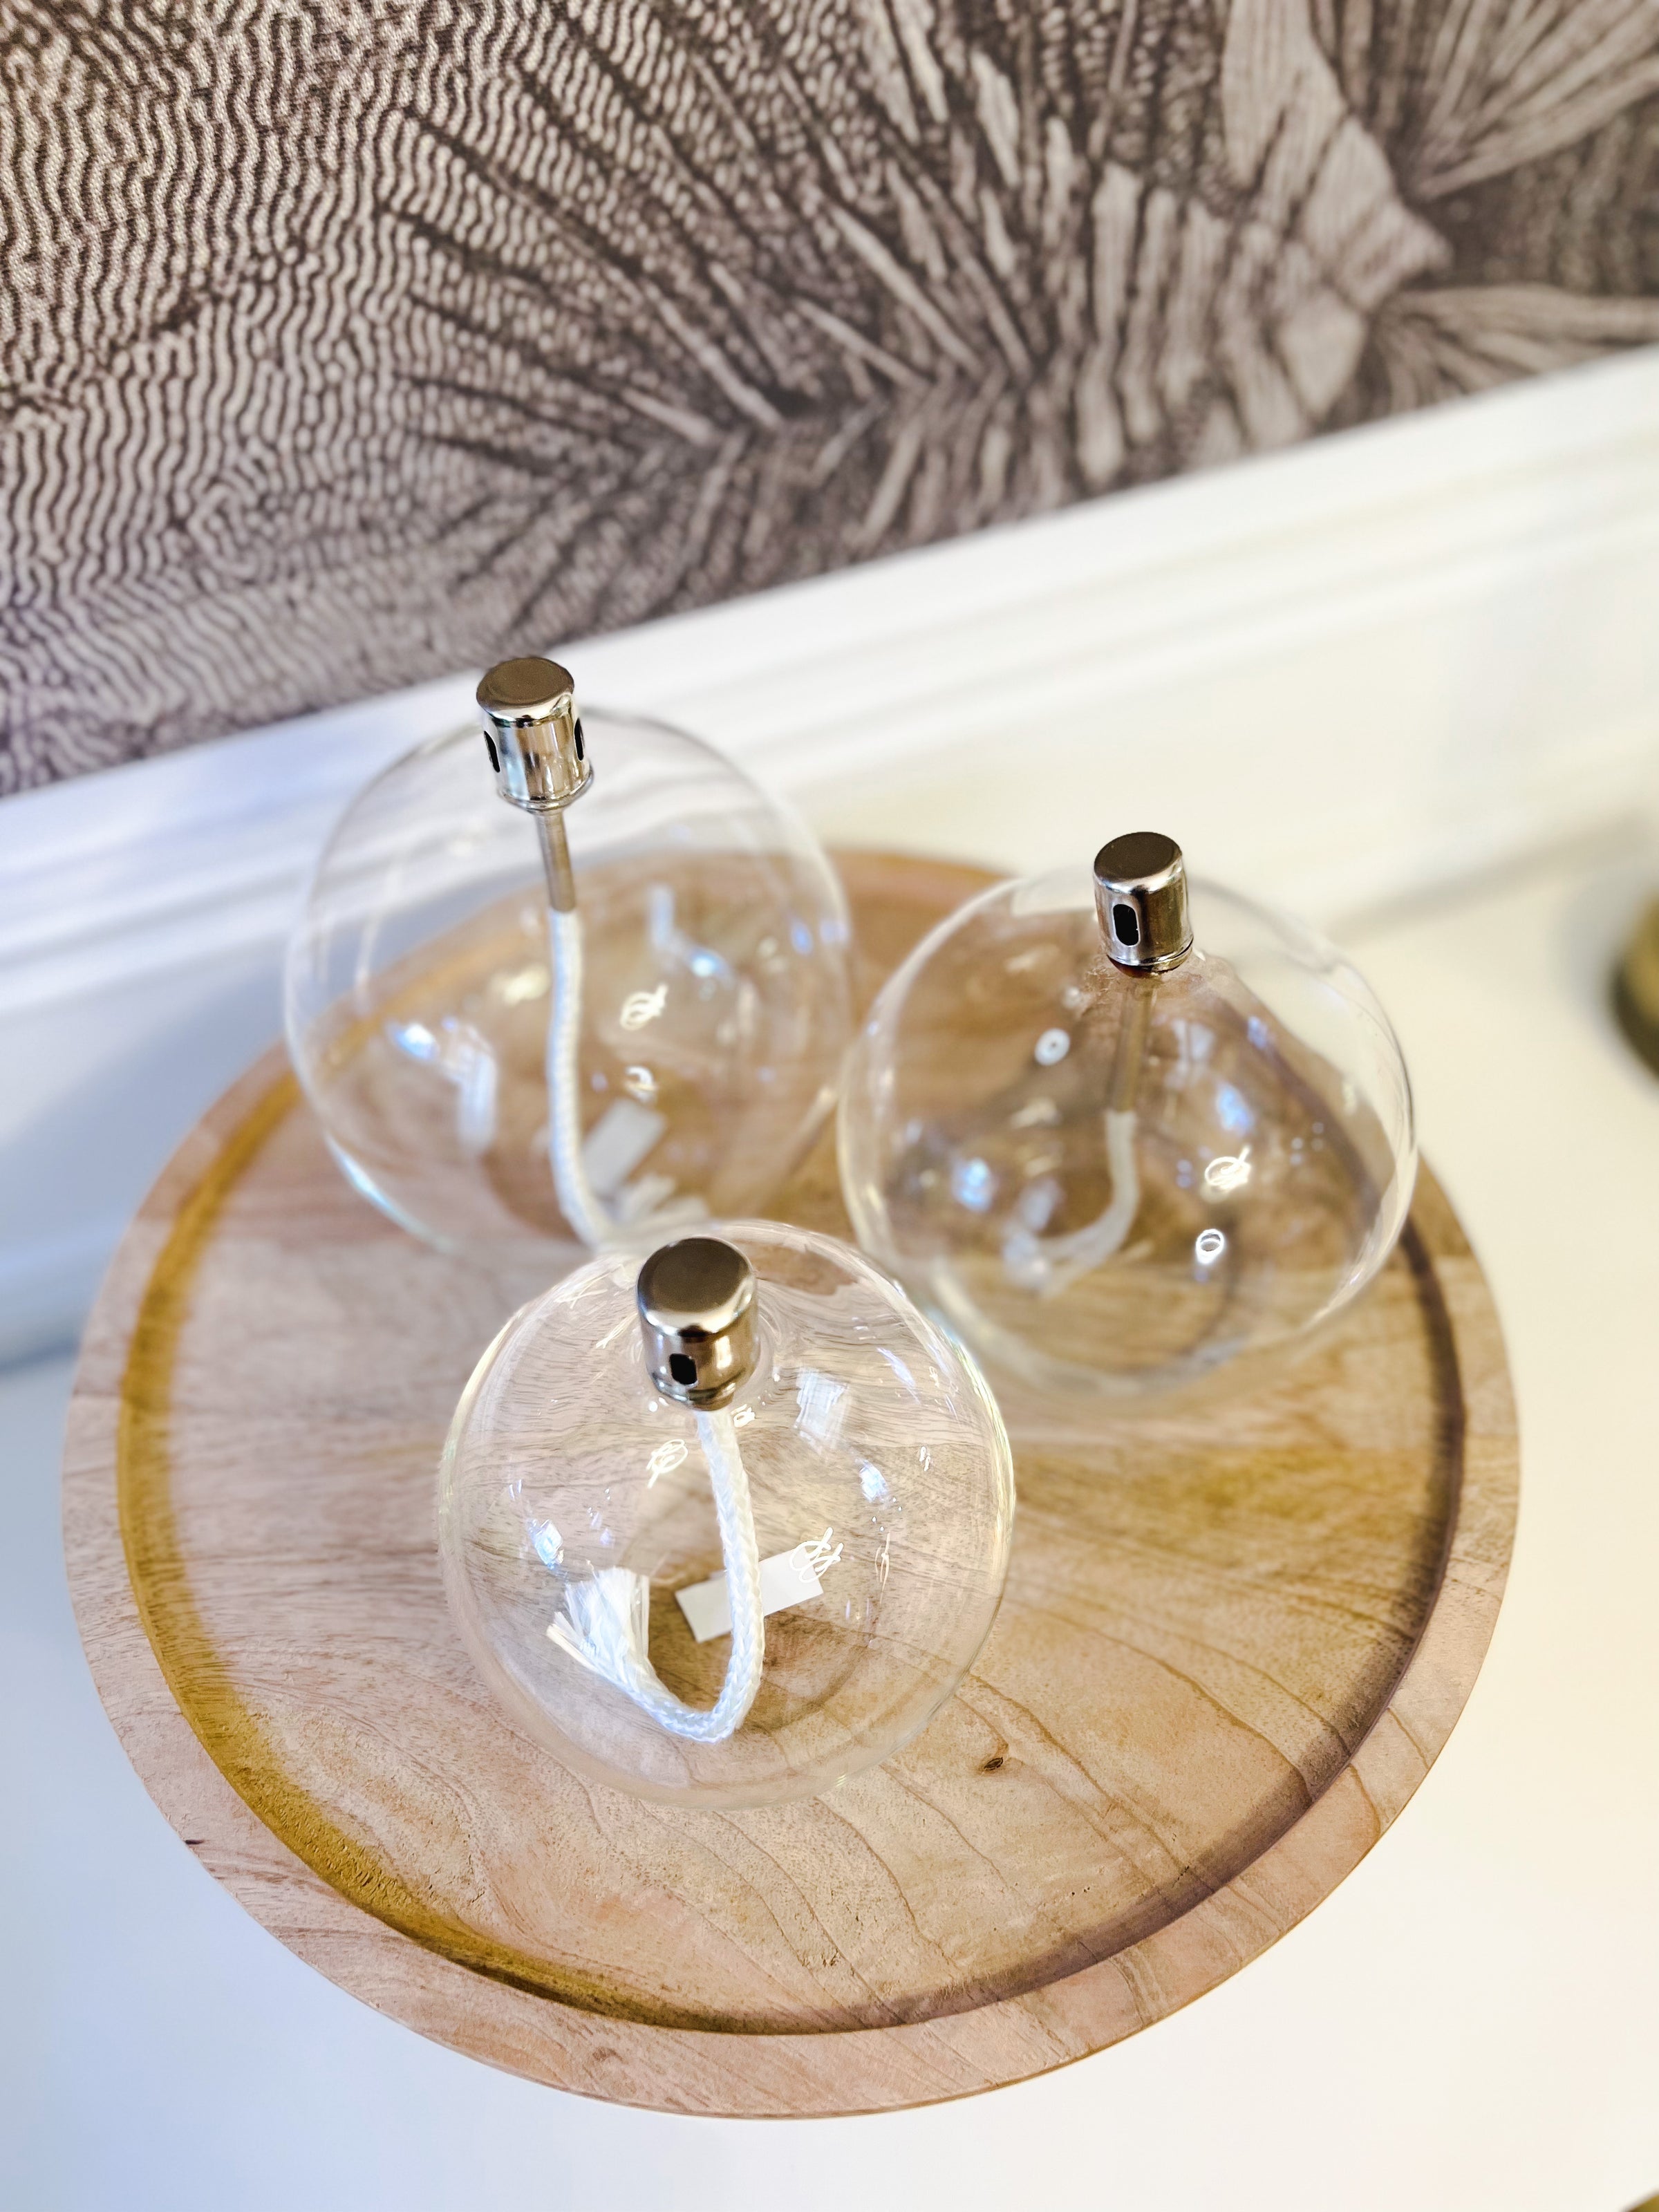 Lampe à huile décorative en forme de sphère